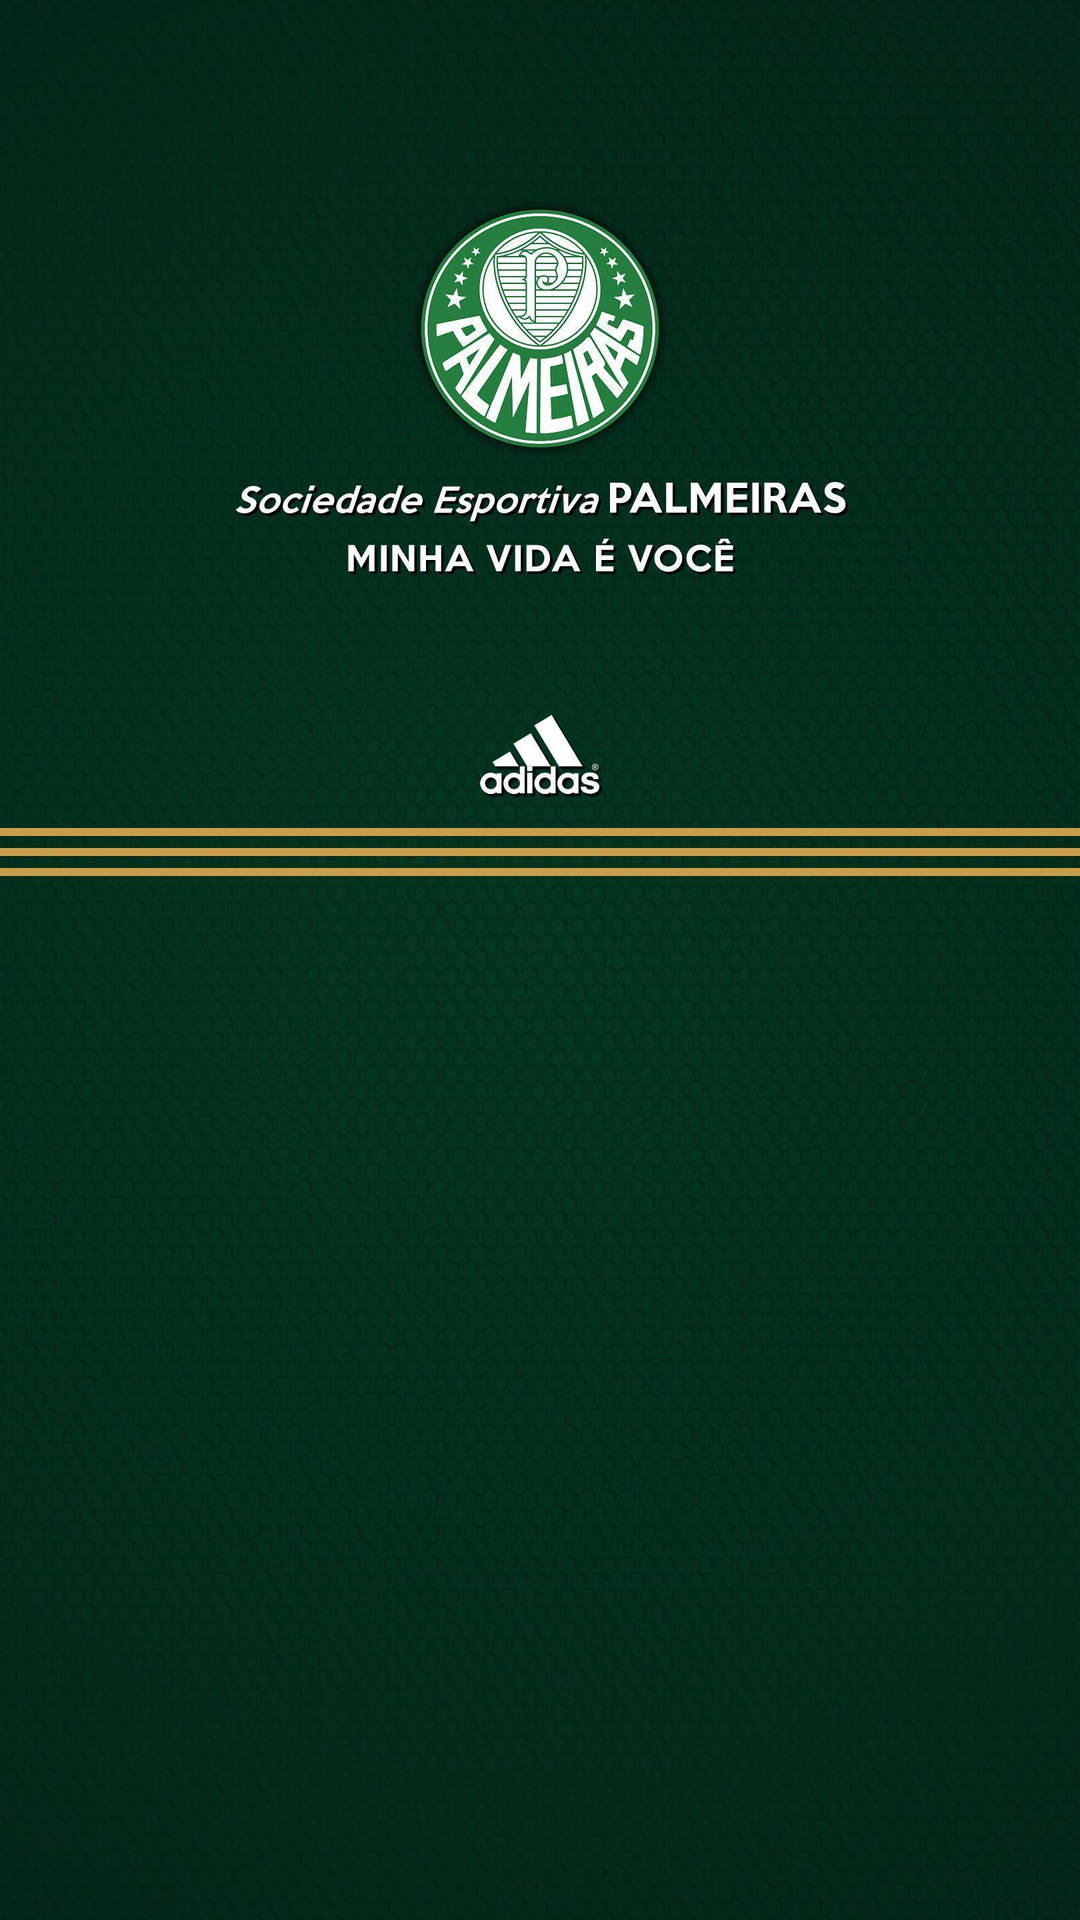 Palmeiras Og Adidas Wallpaper